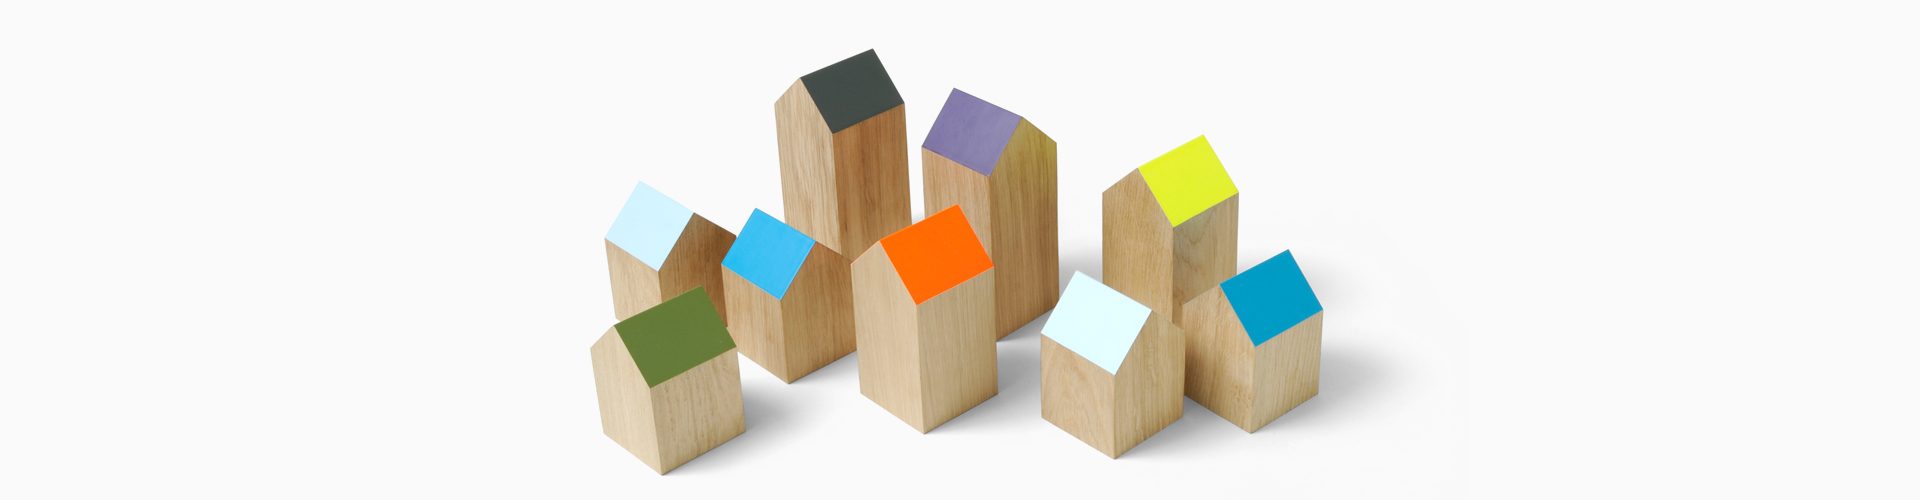 Houten blokjes in de vorm van een huisje met gekleurde schuine daken